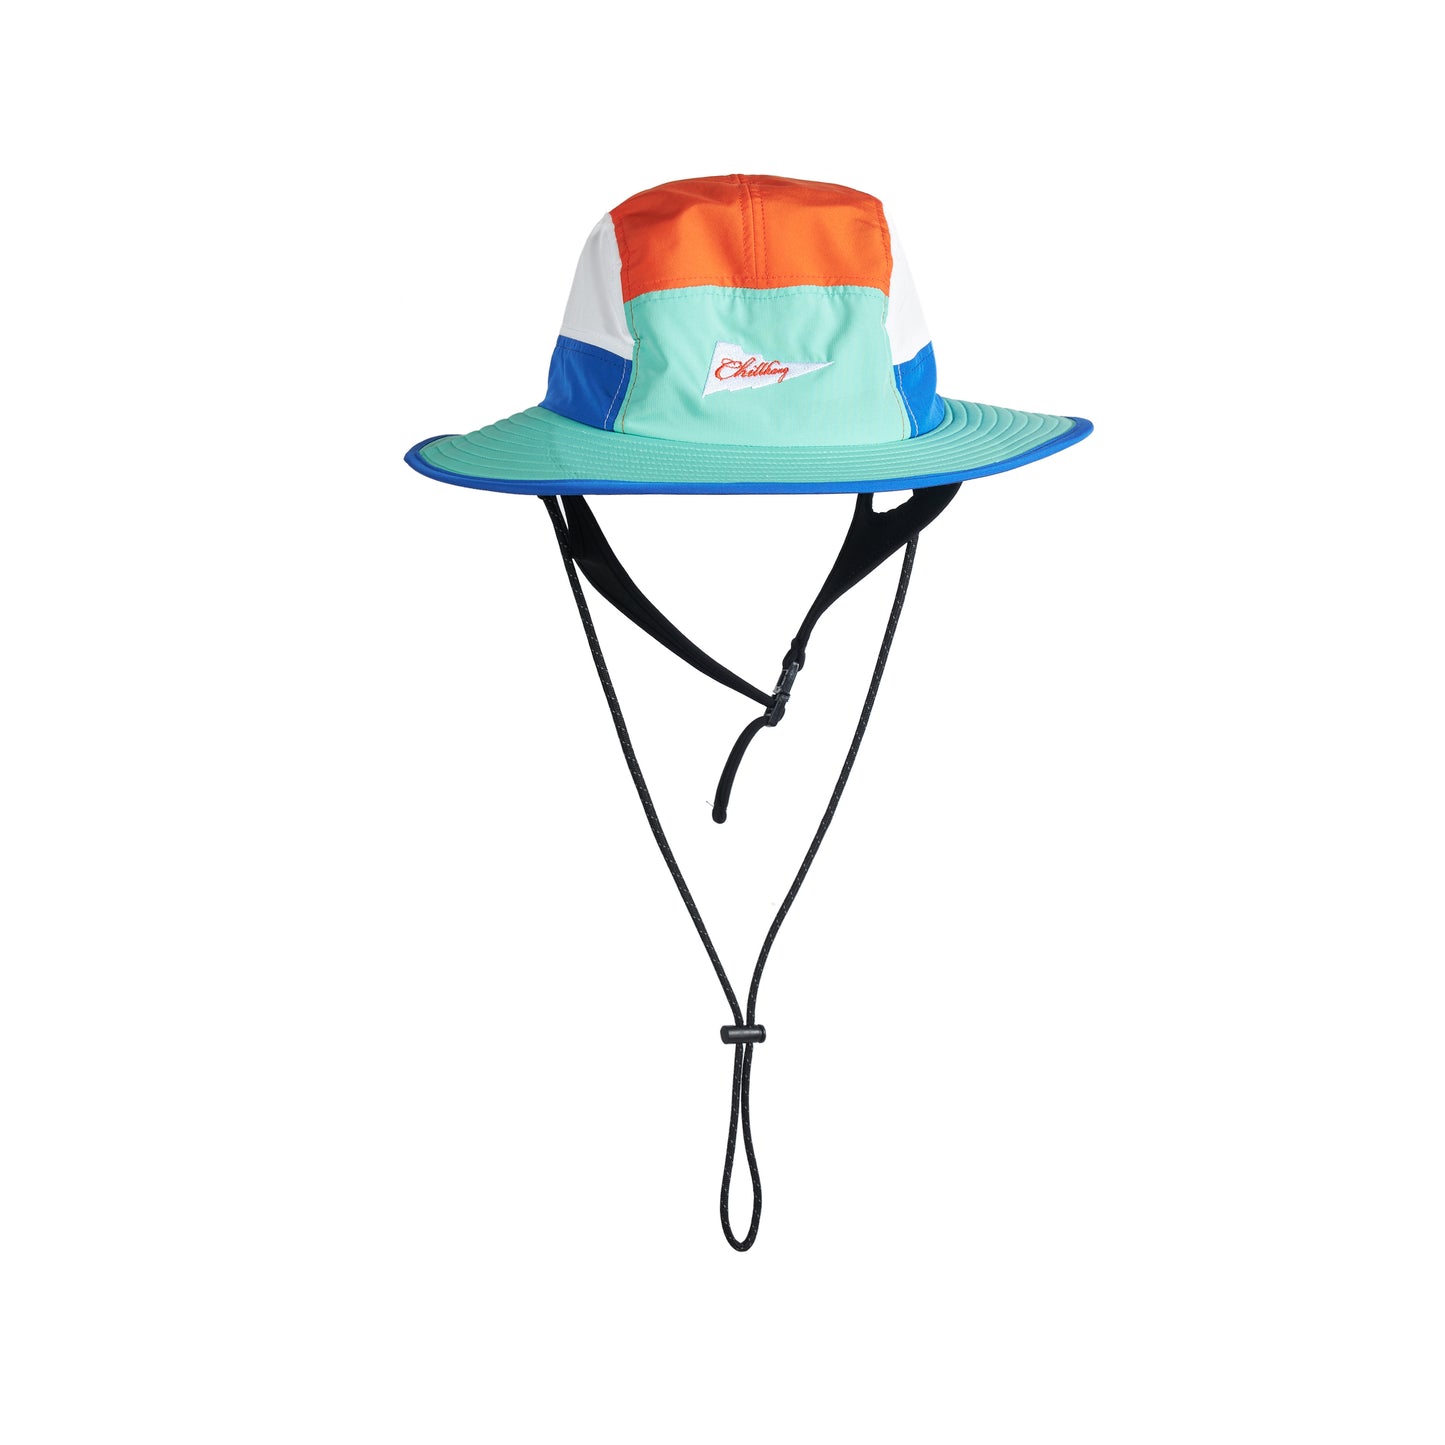 CHILLHANG 拼色衝浪漁夫帽(藍 x 橙)